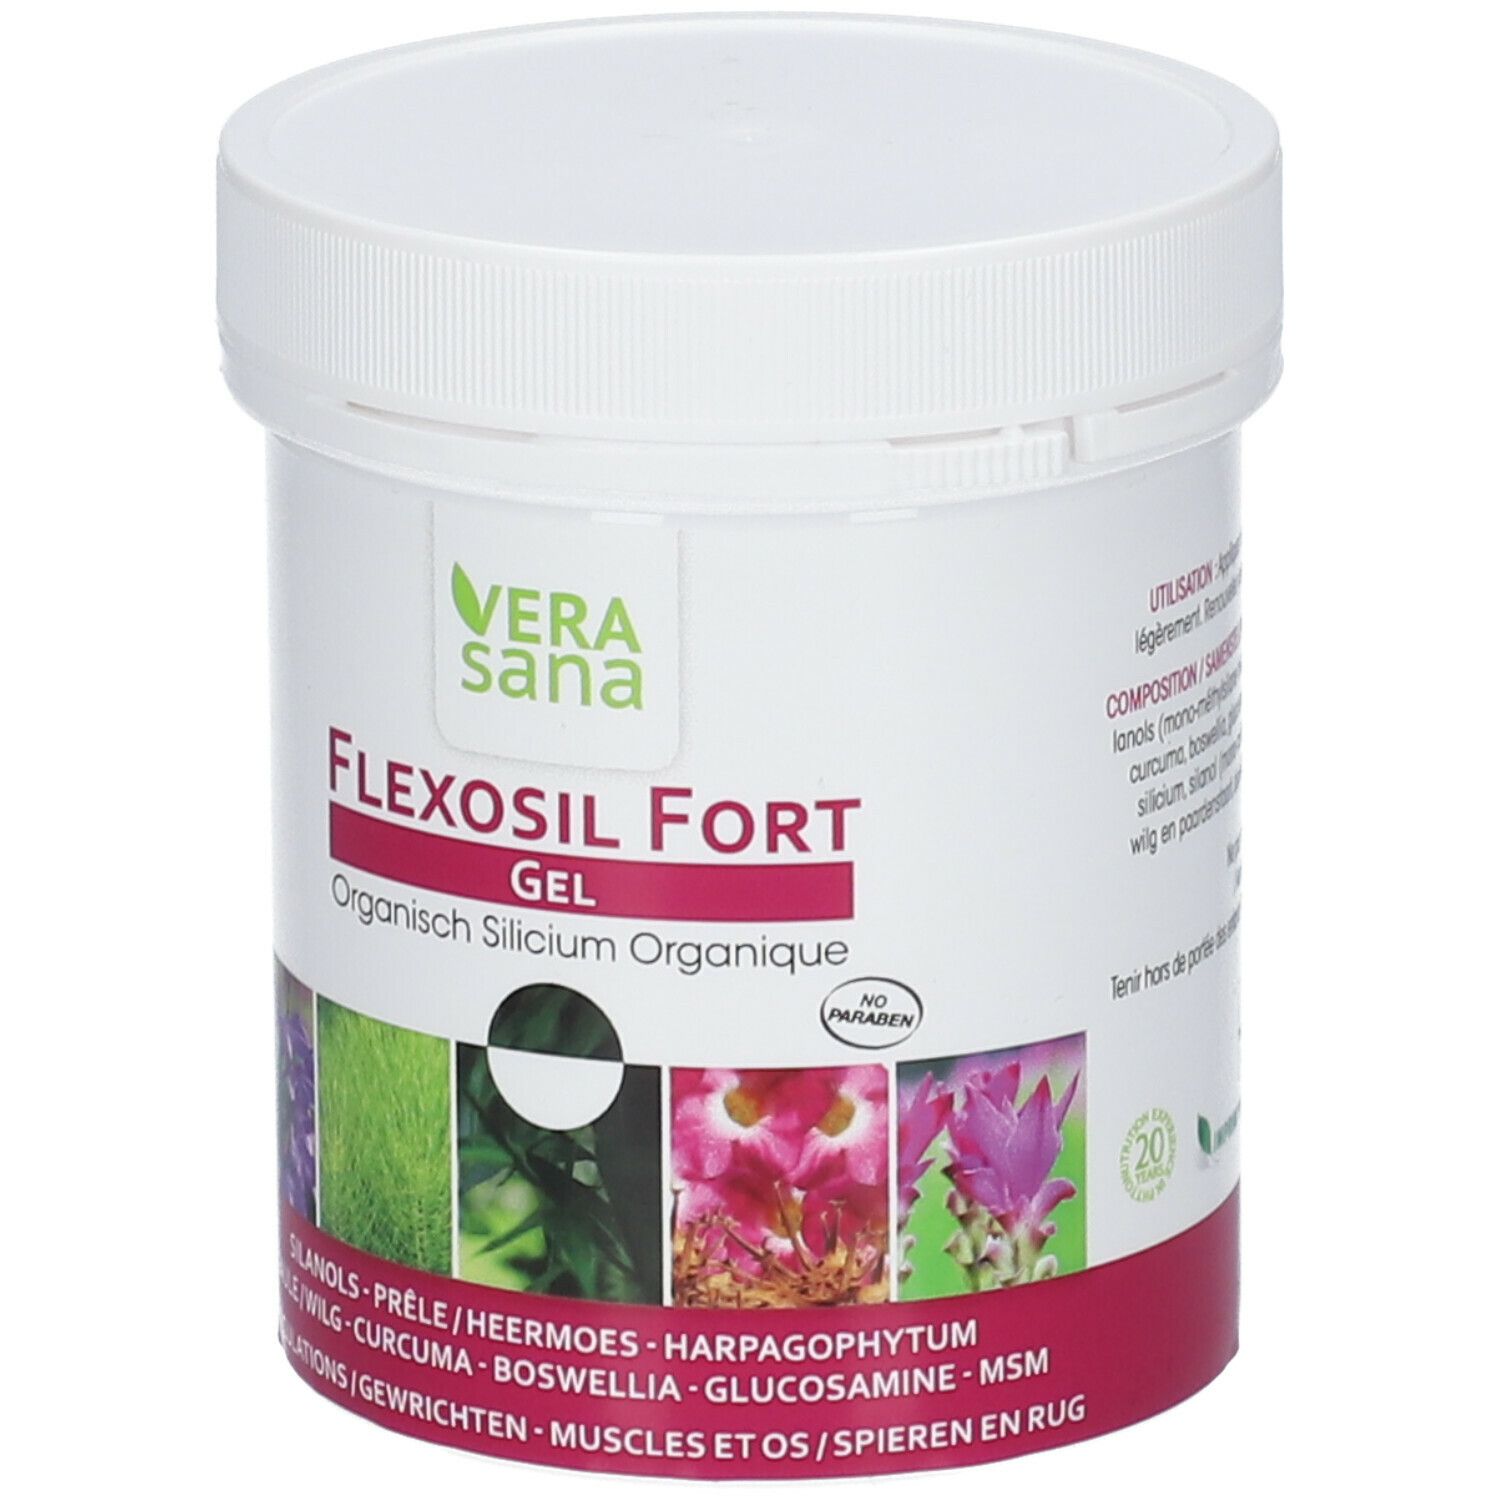 Flexosil Fort